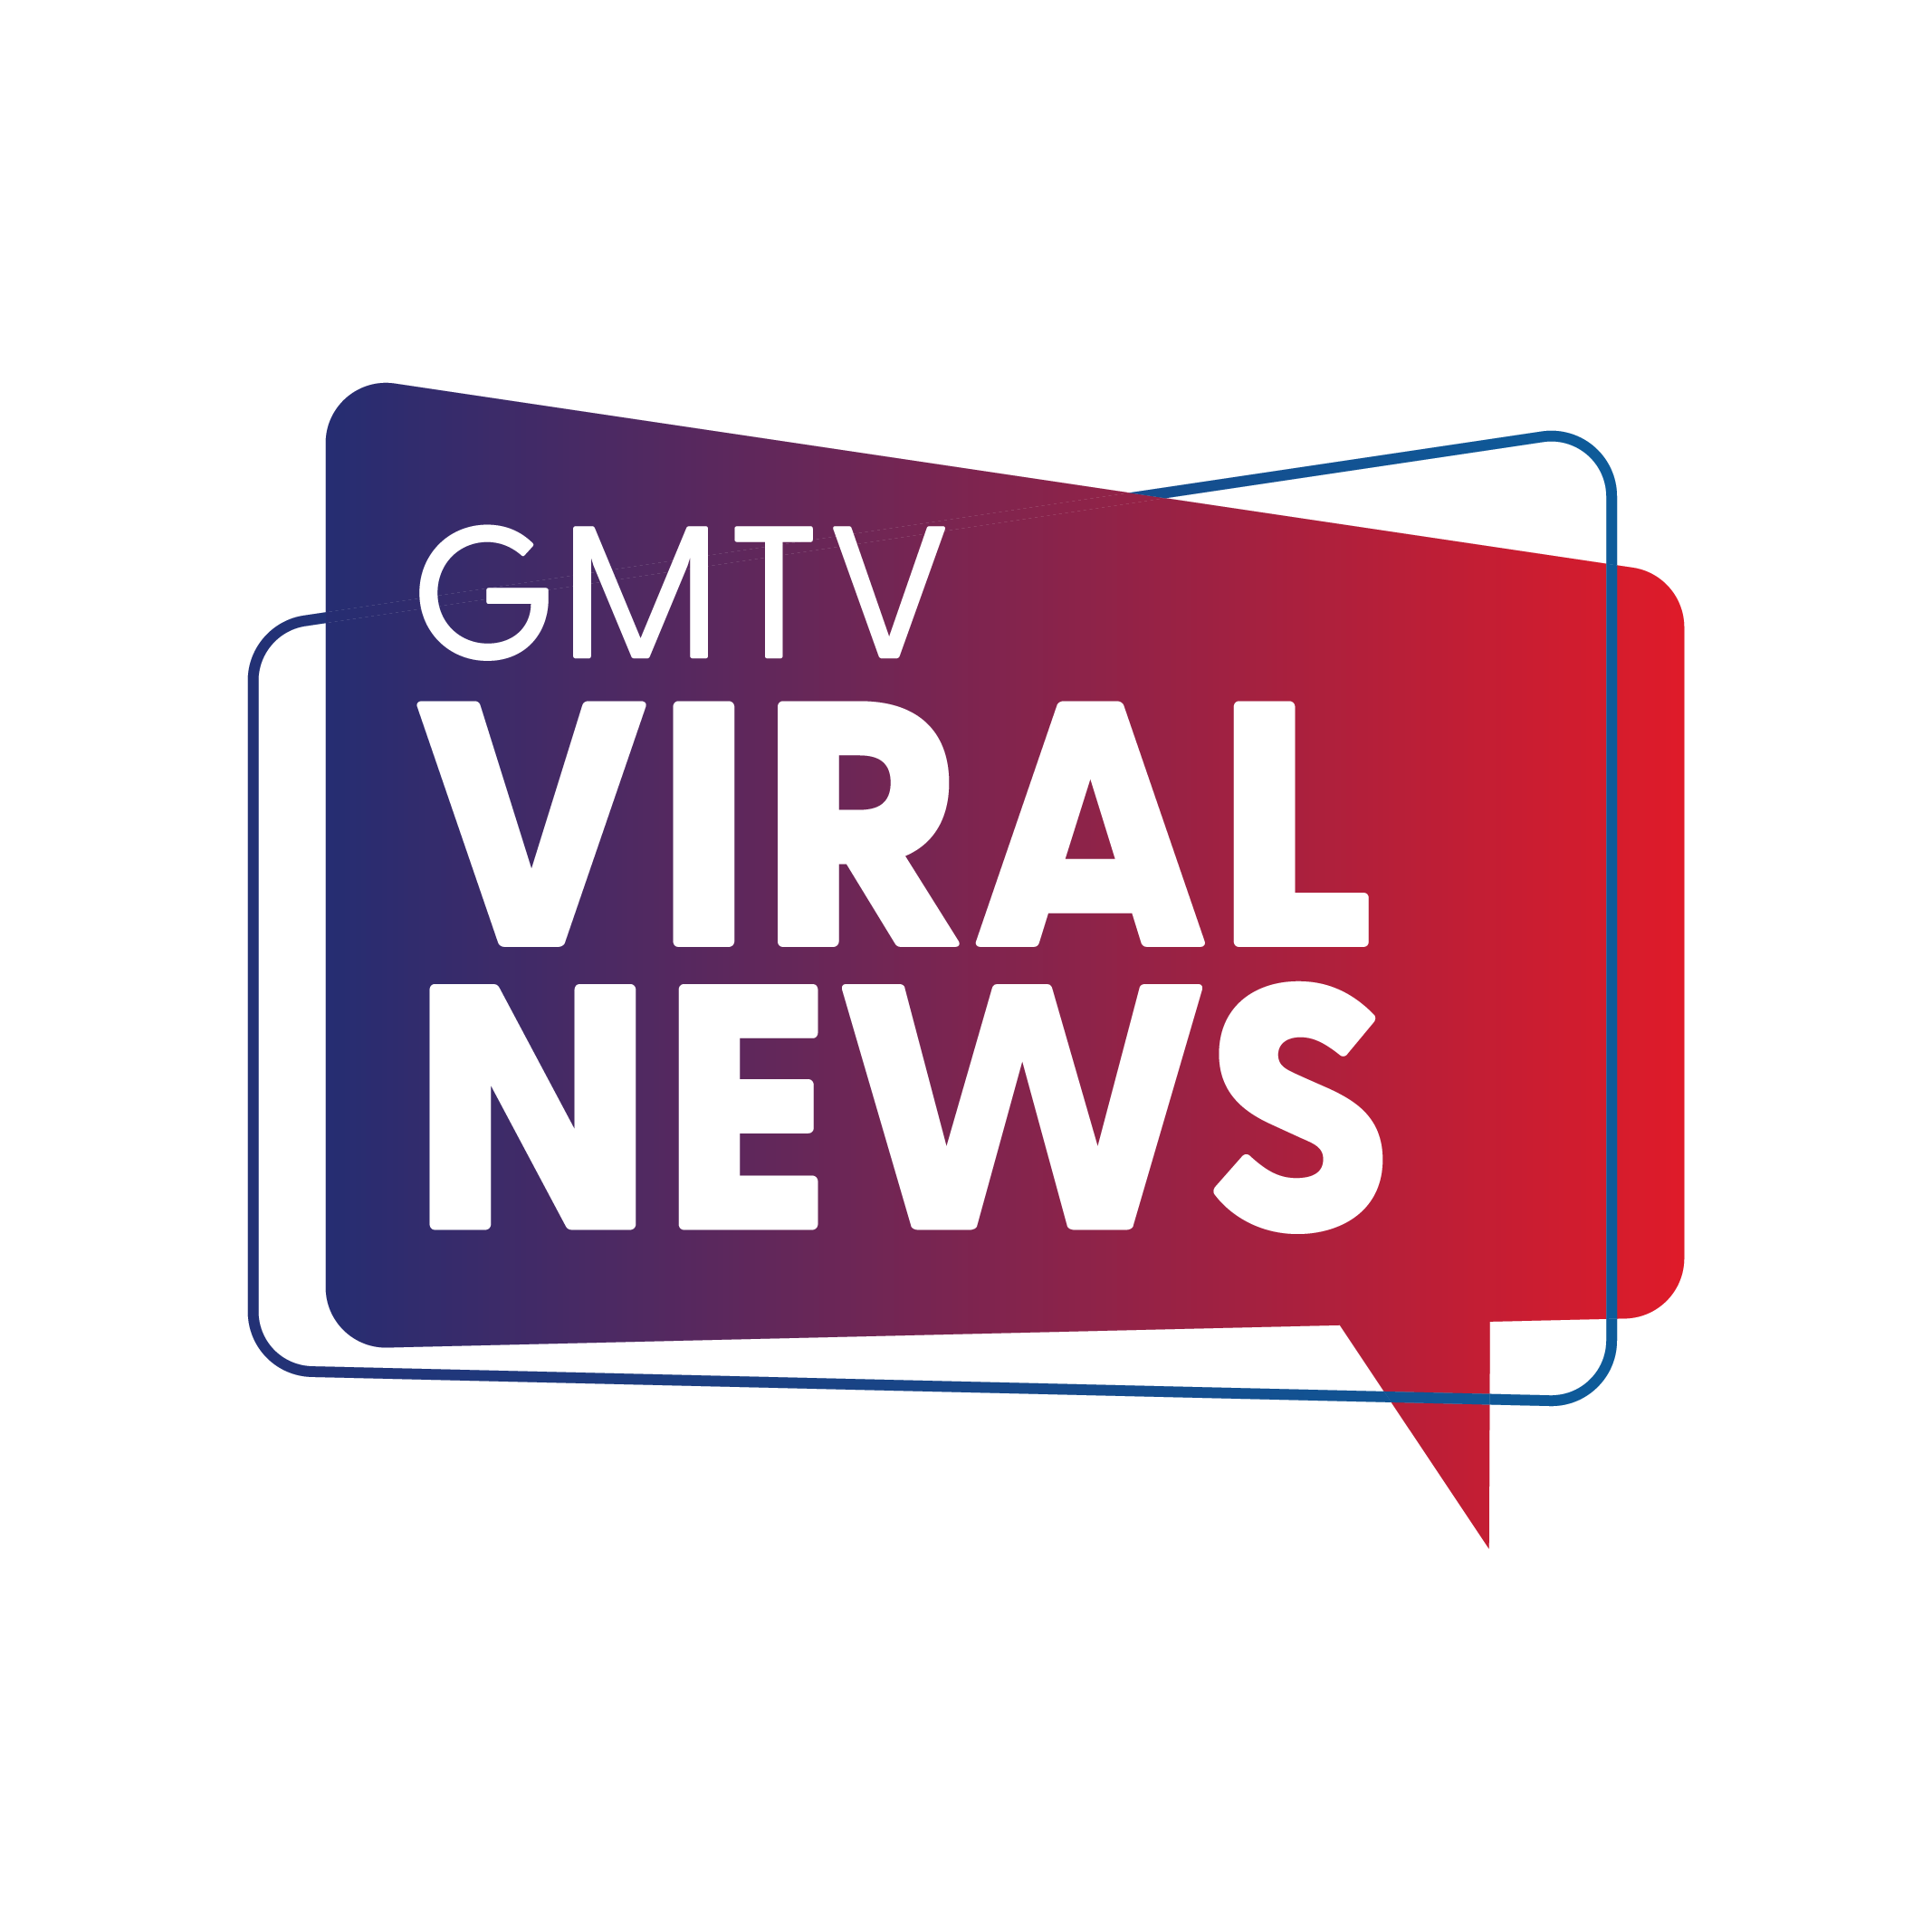 GMTV Viral News